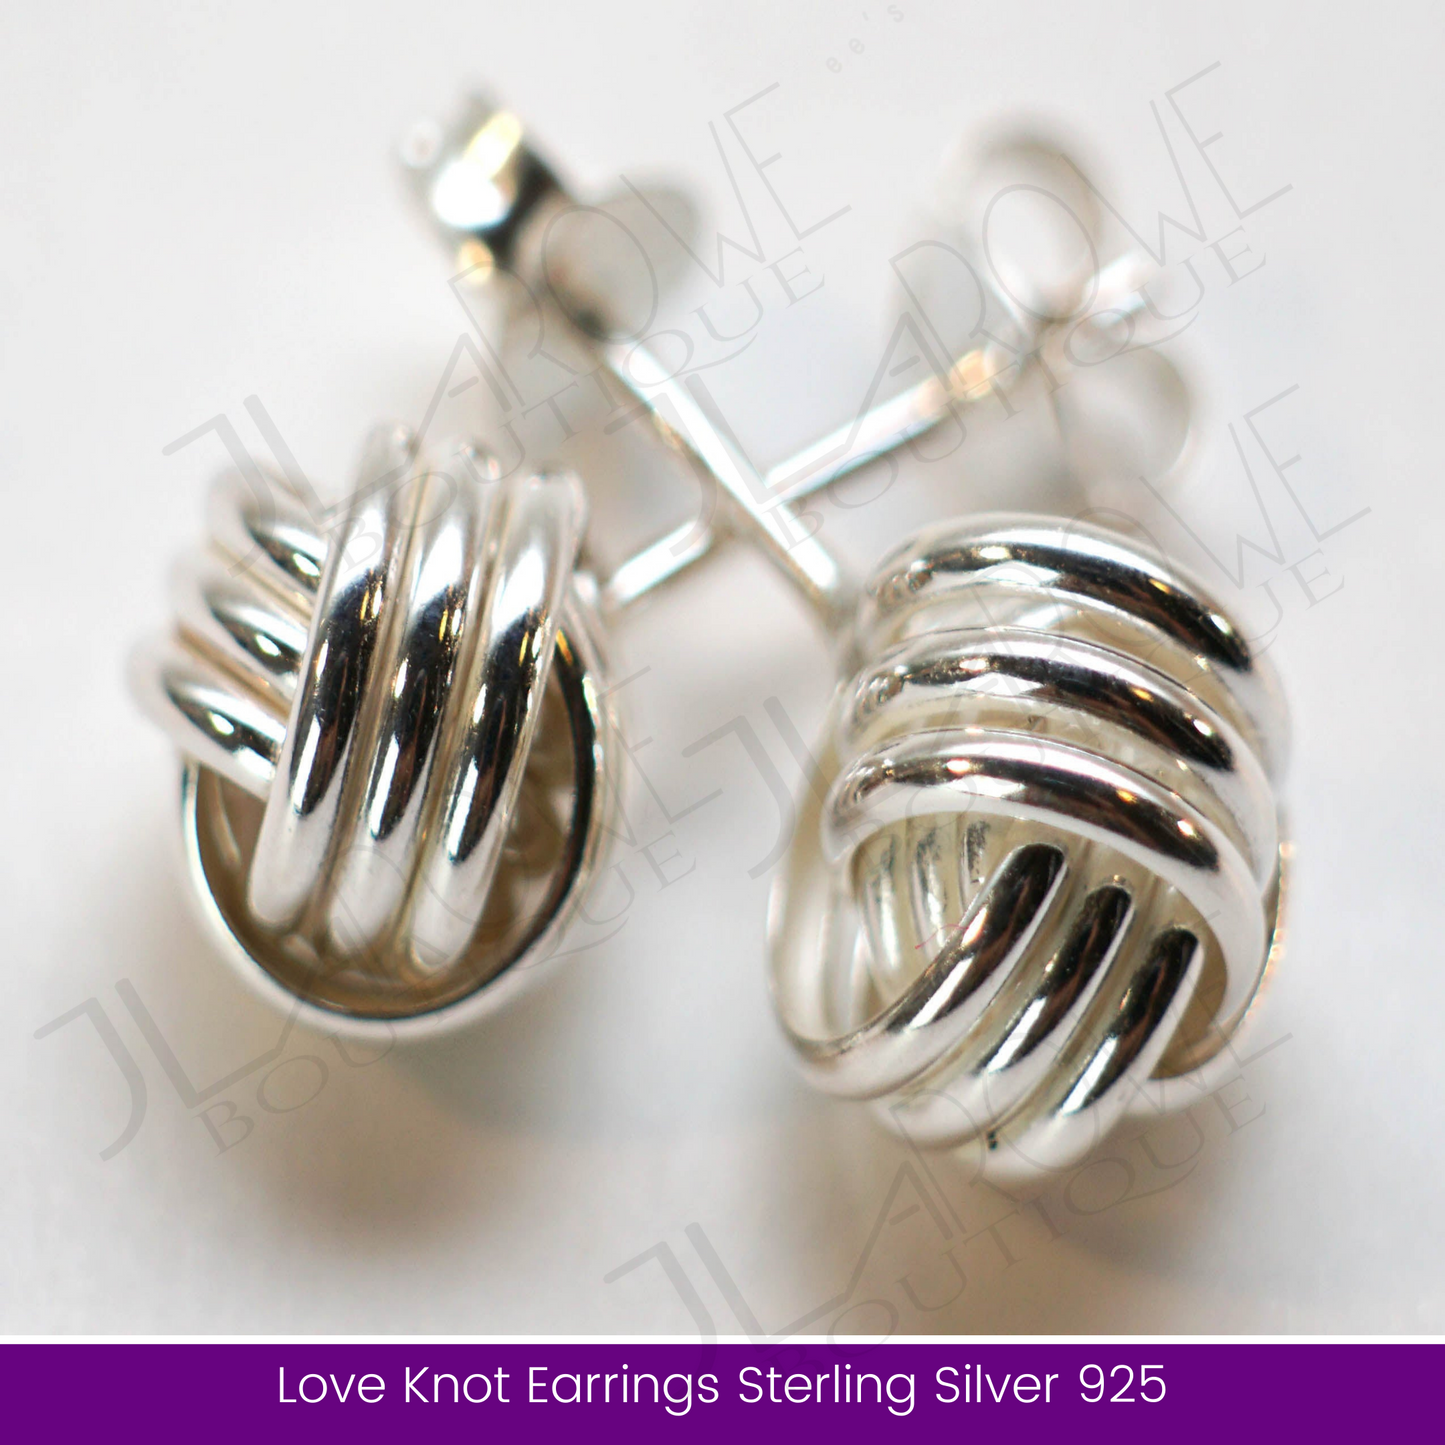 Love Knot Earrings Sterling Silver 925